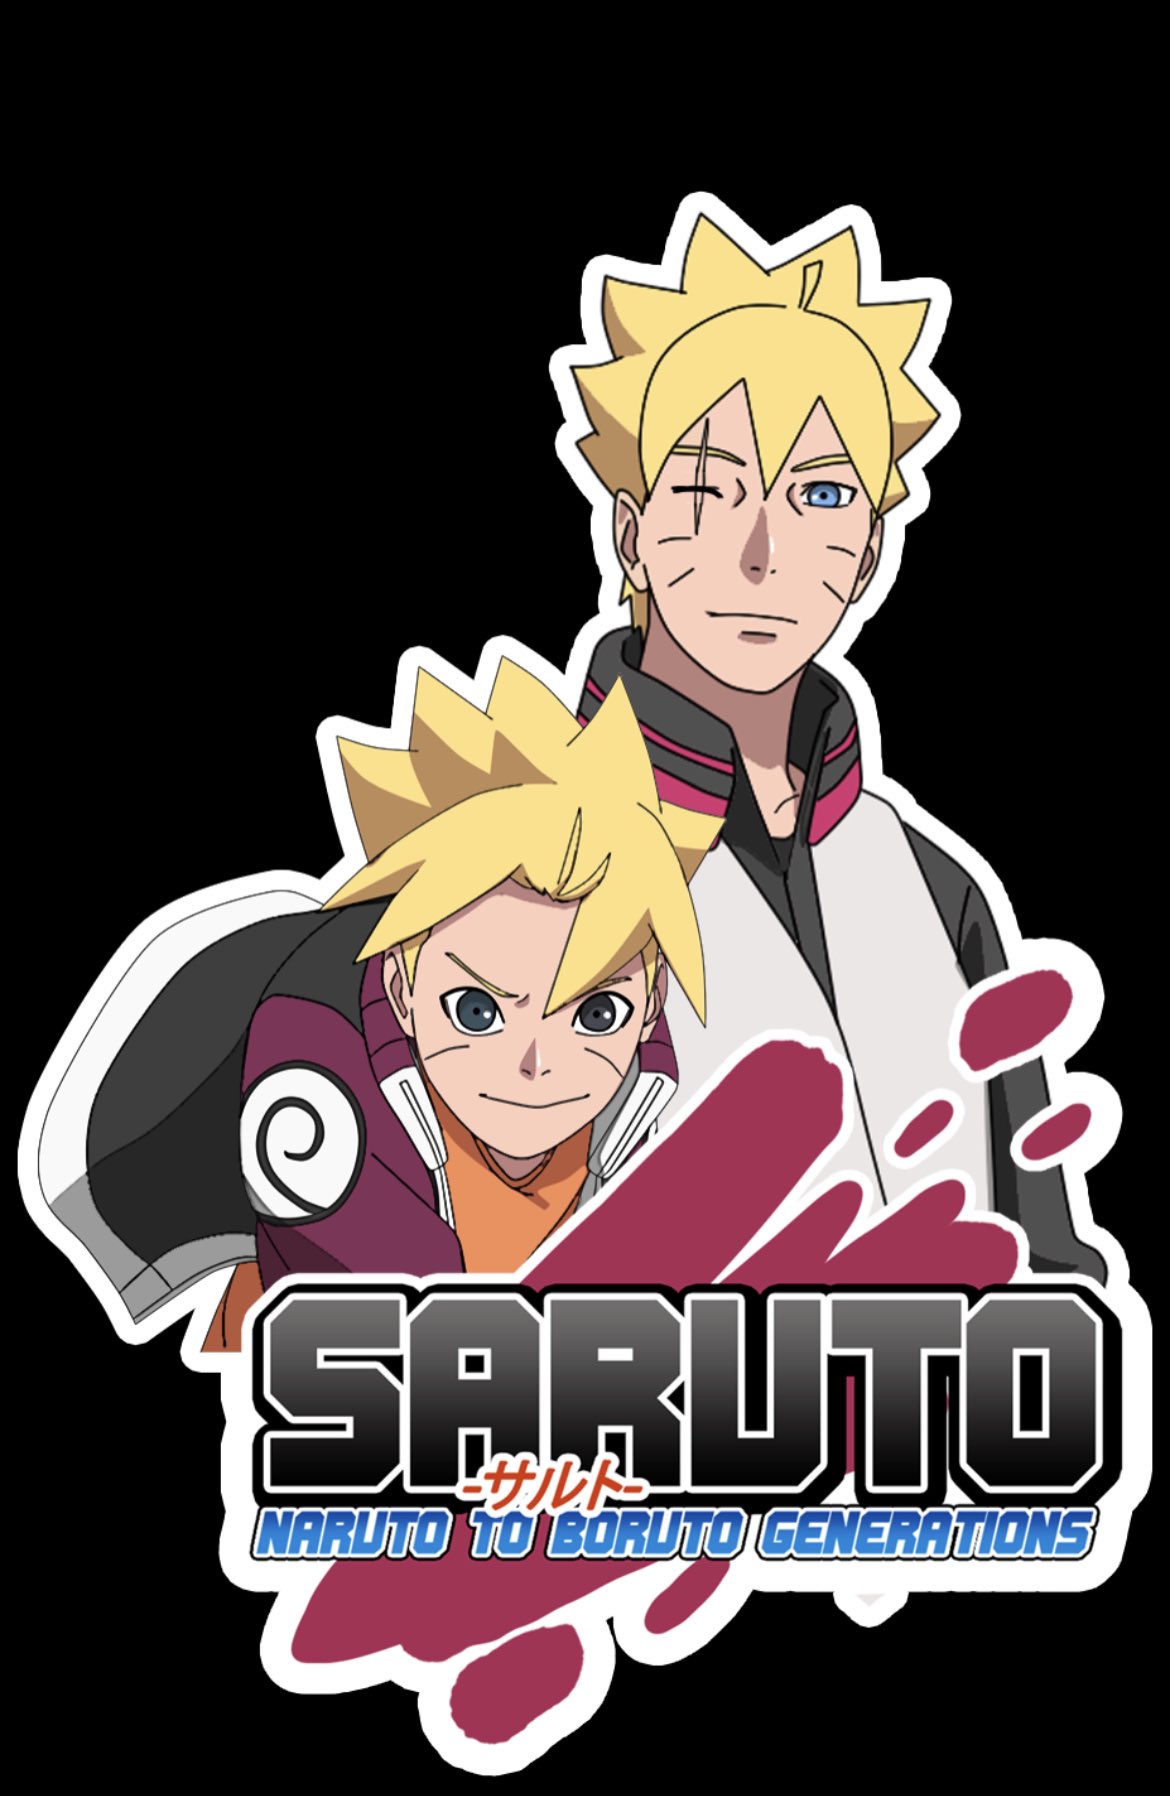 kruos_ on X: New Poster for “Saruto: Naruto to Boruto Genarations